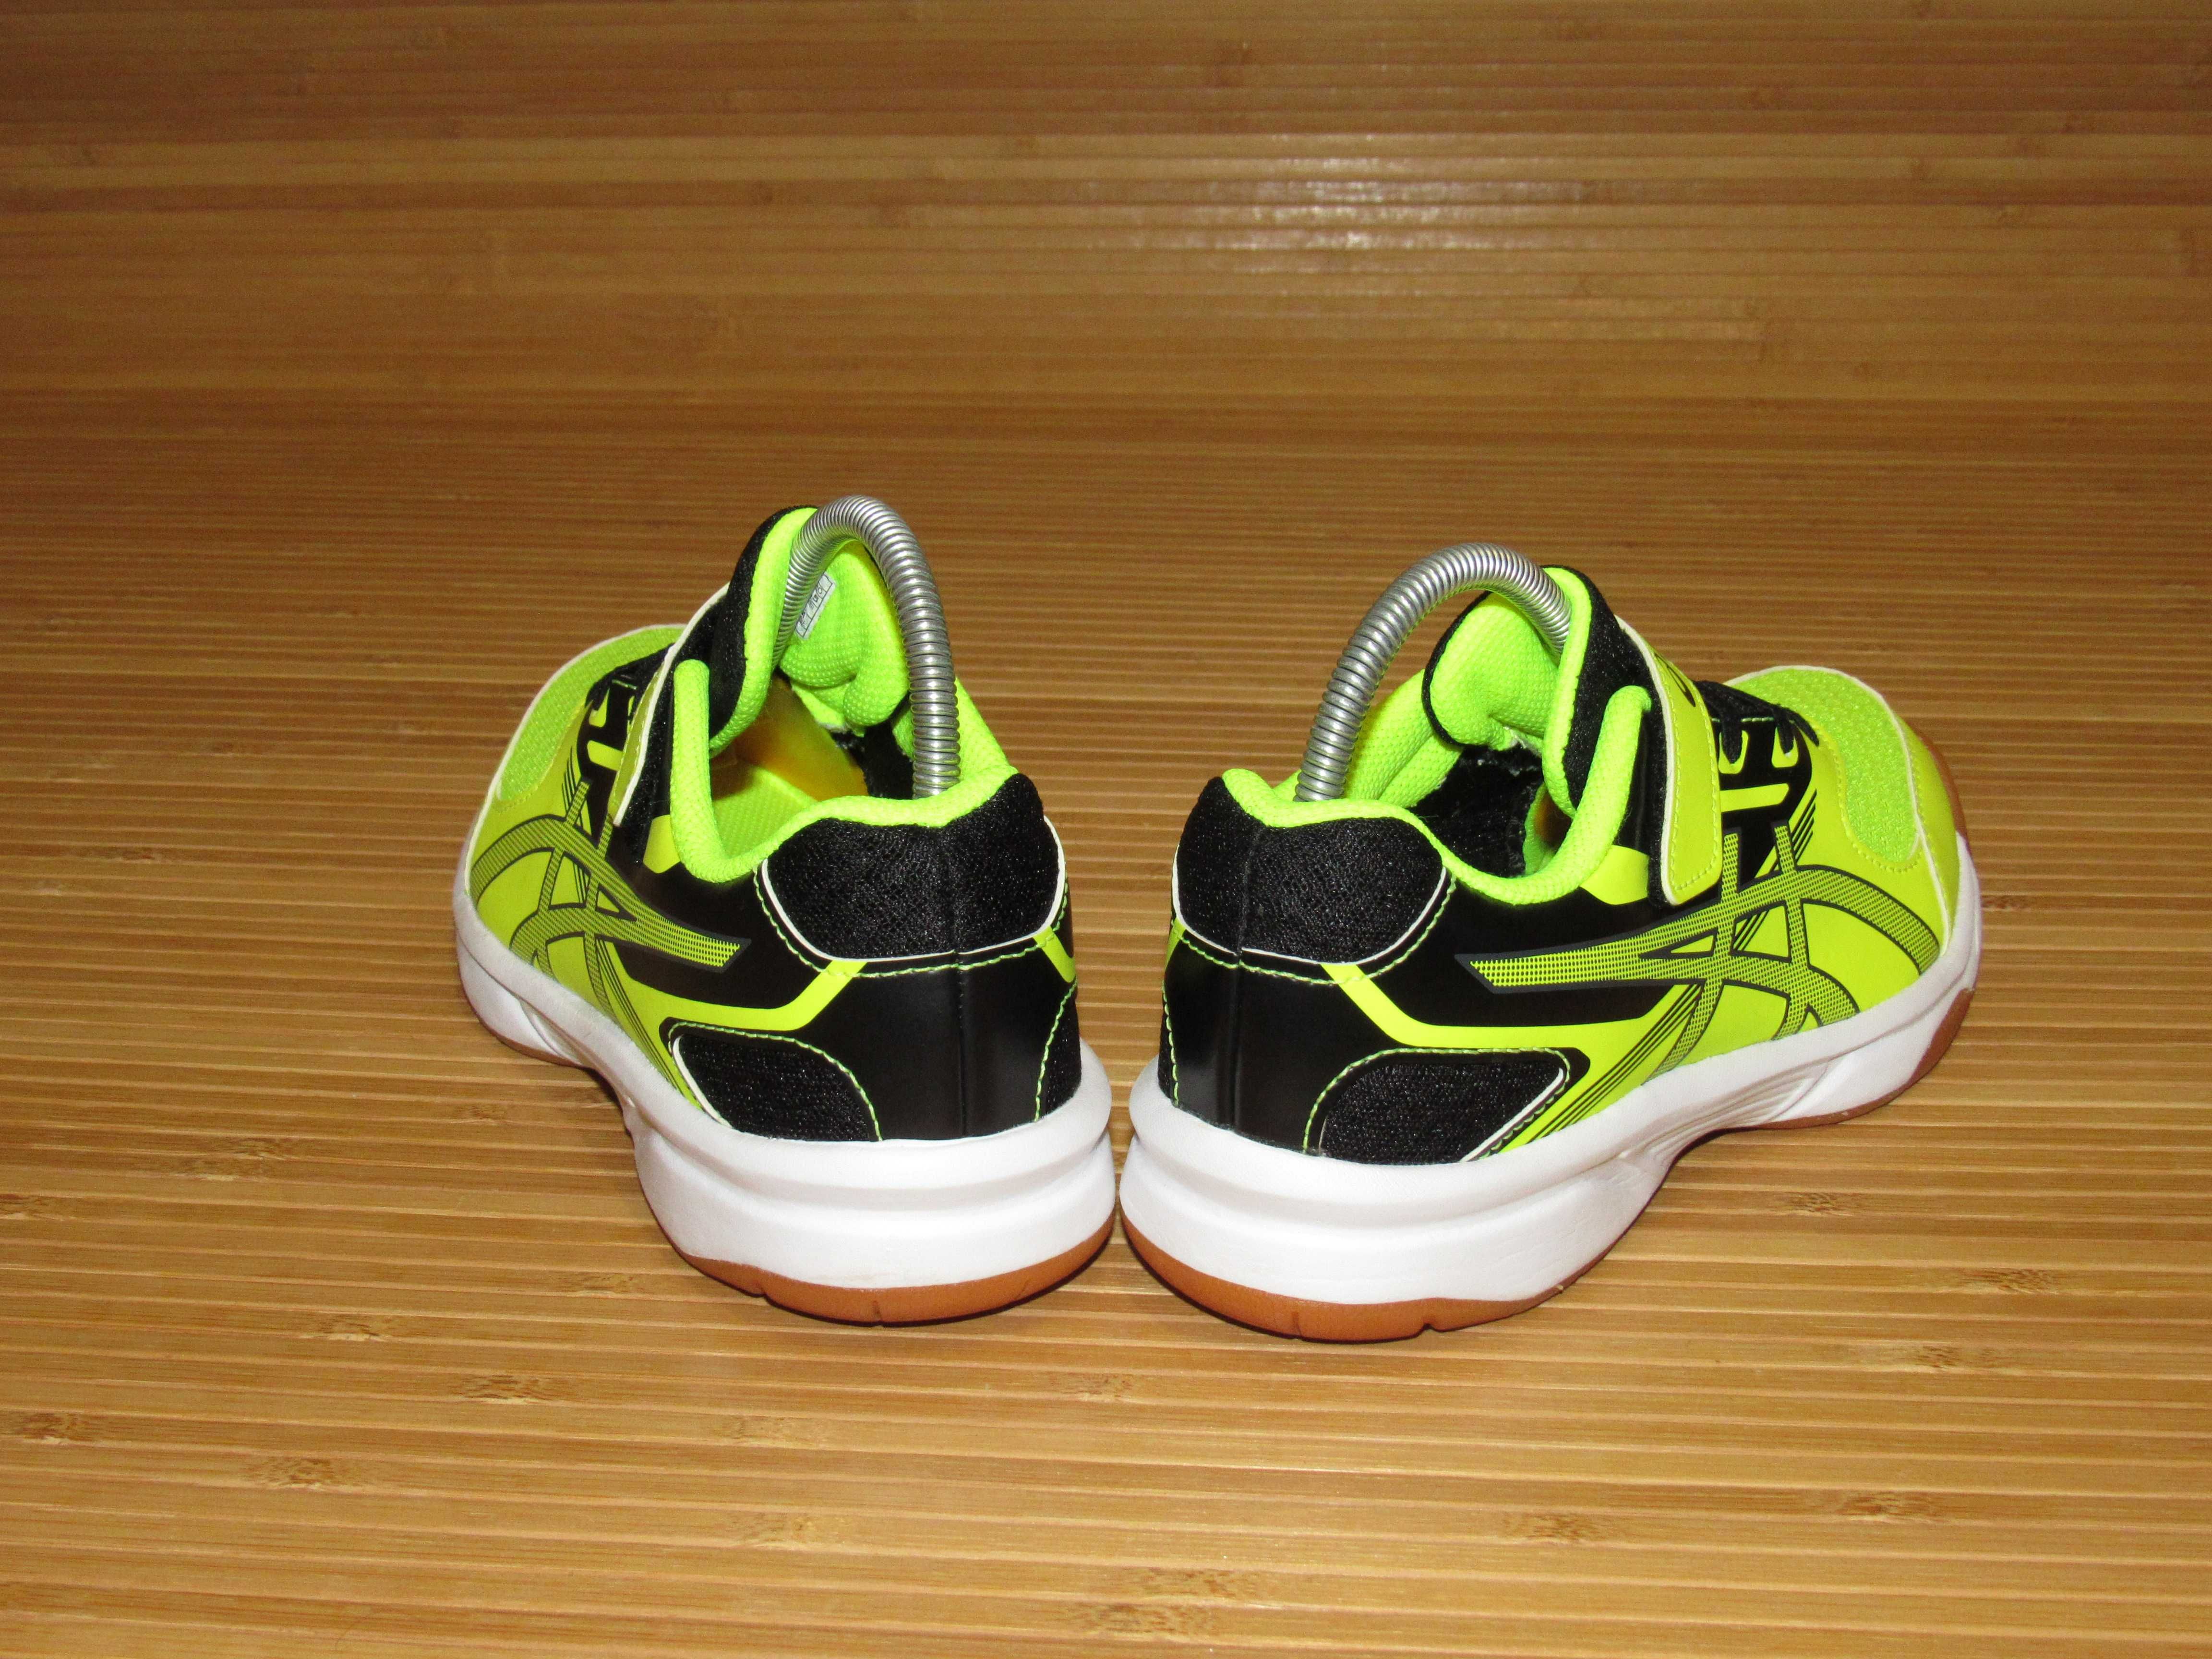 Кросівки для волейболу Asics Upcourt 2 PS; EUR-34,5; ус-ка 21,5см